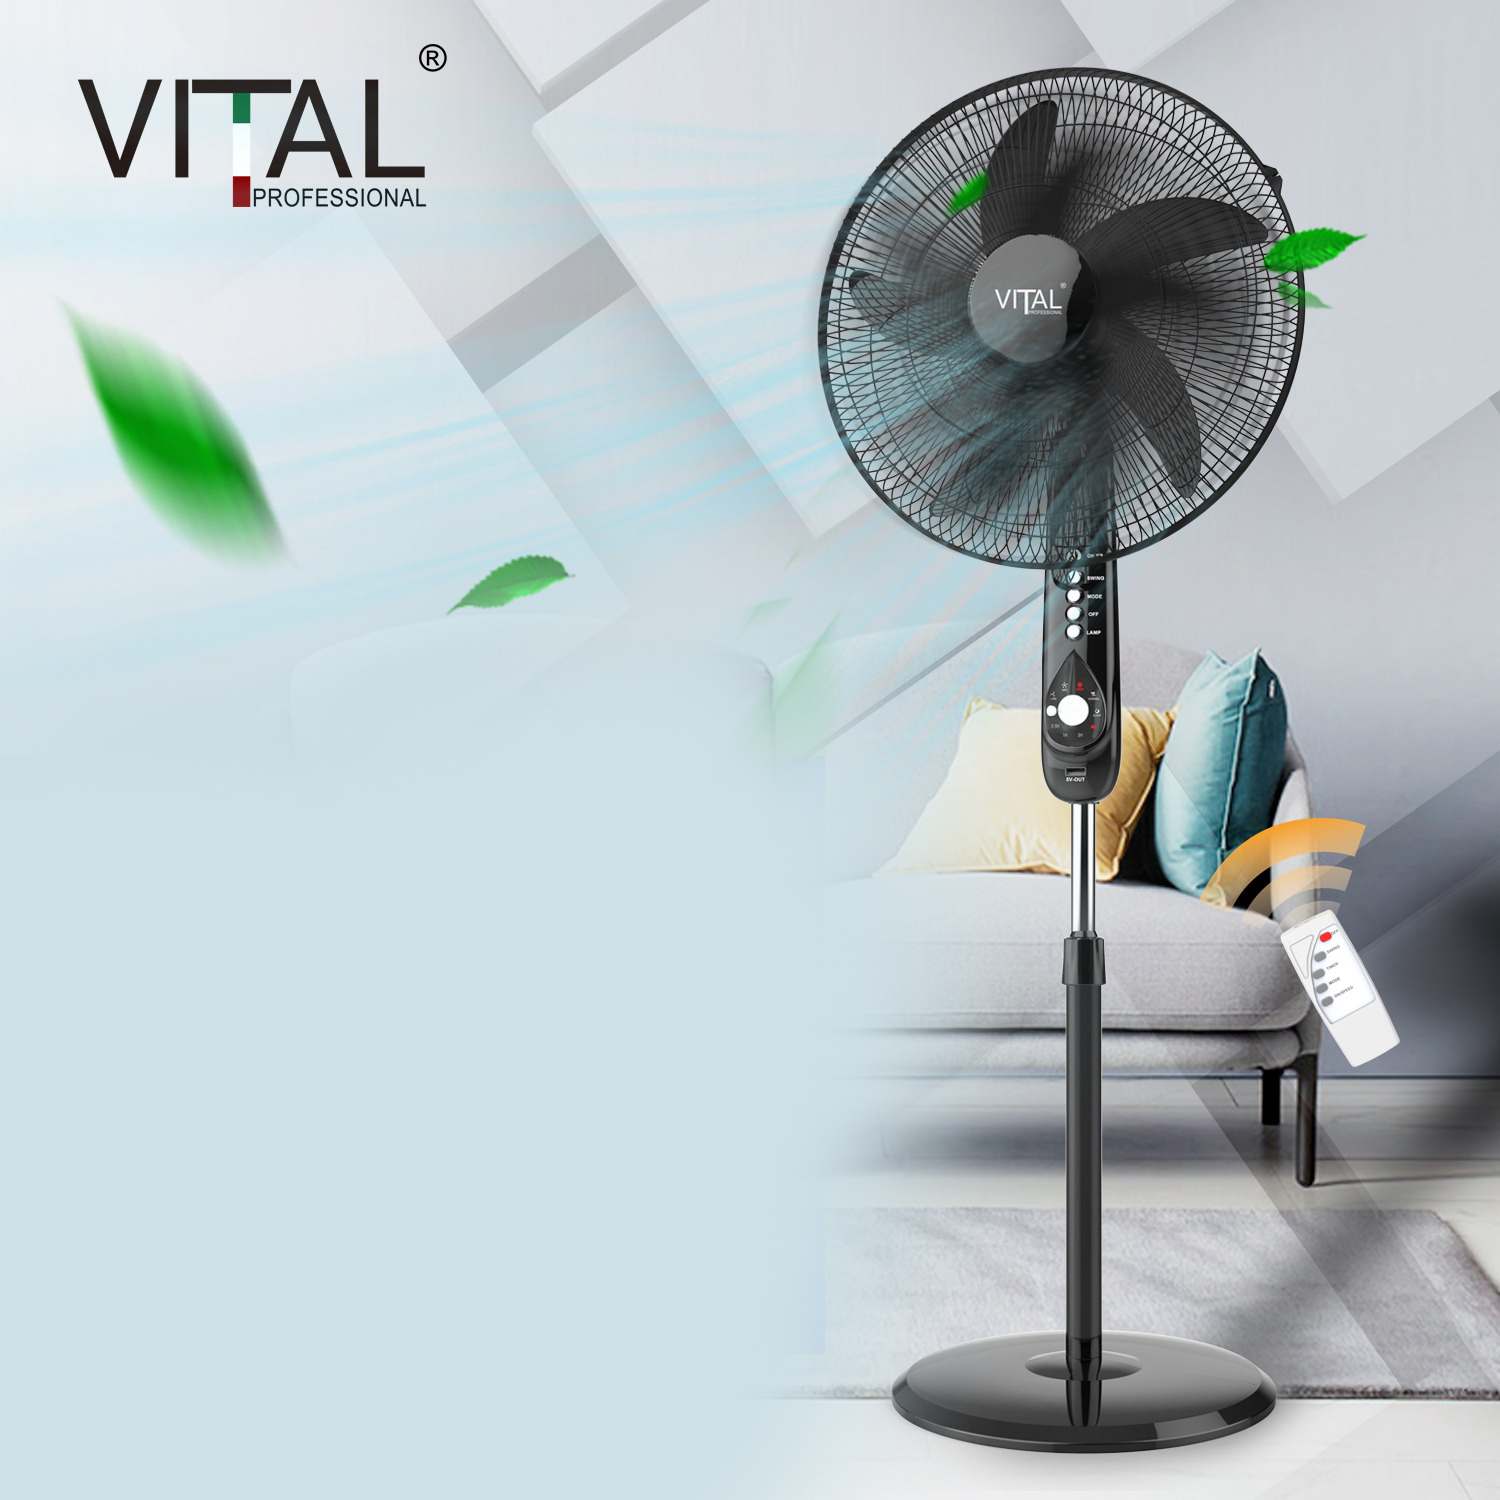 Vital 6 in 1 stand fan 18 inch